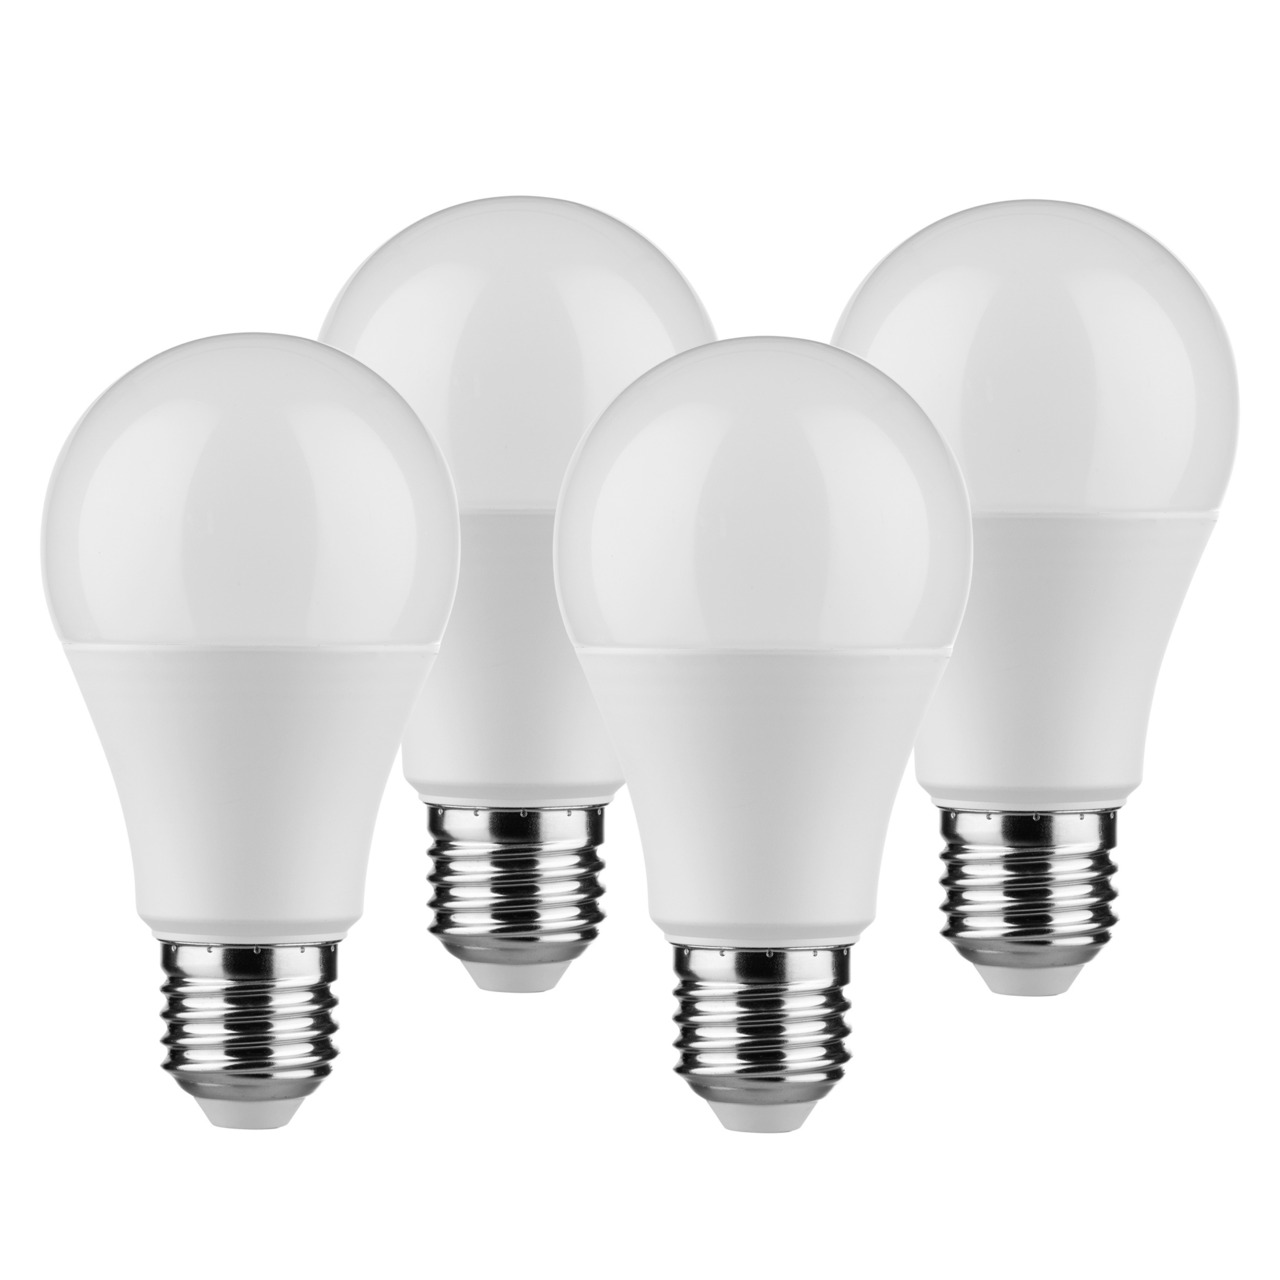 Müller Licht 4er Pack 9-W-LED-Lampen E27- warmweiss- 806 lm unter Beleuchtung